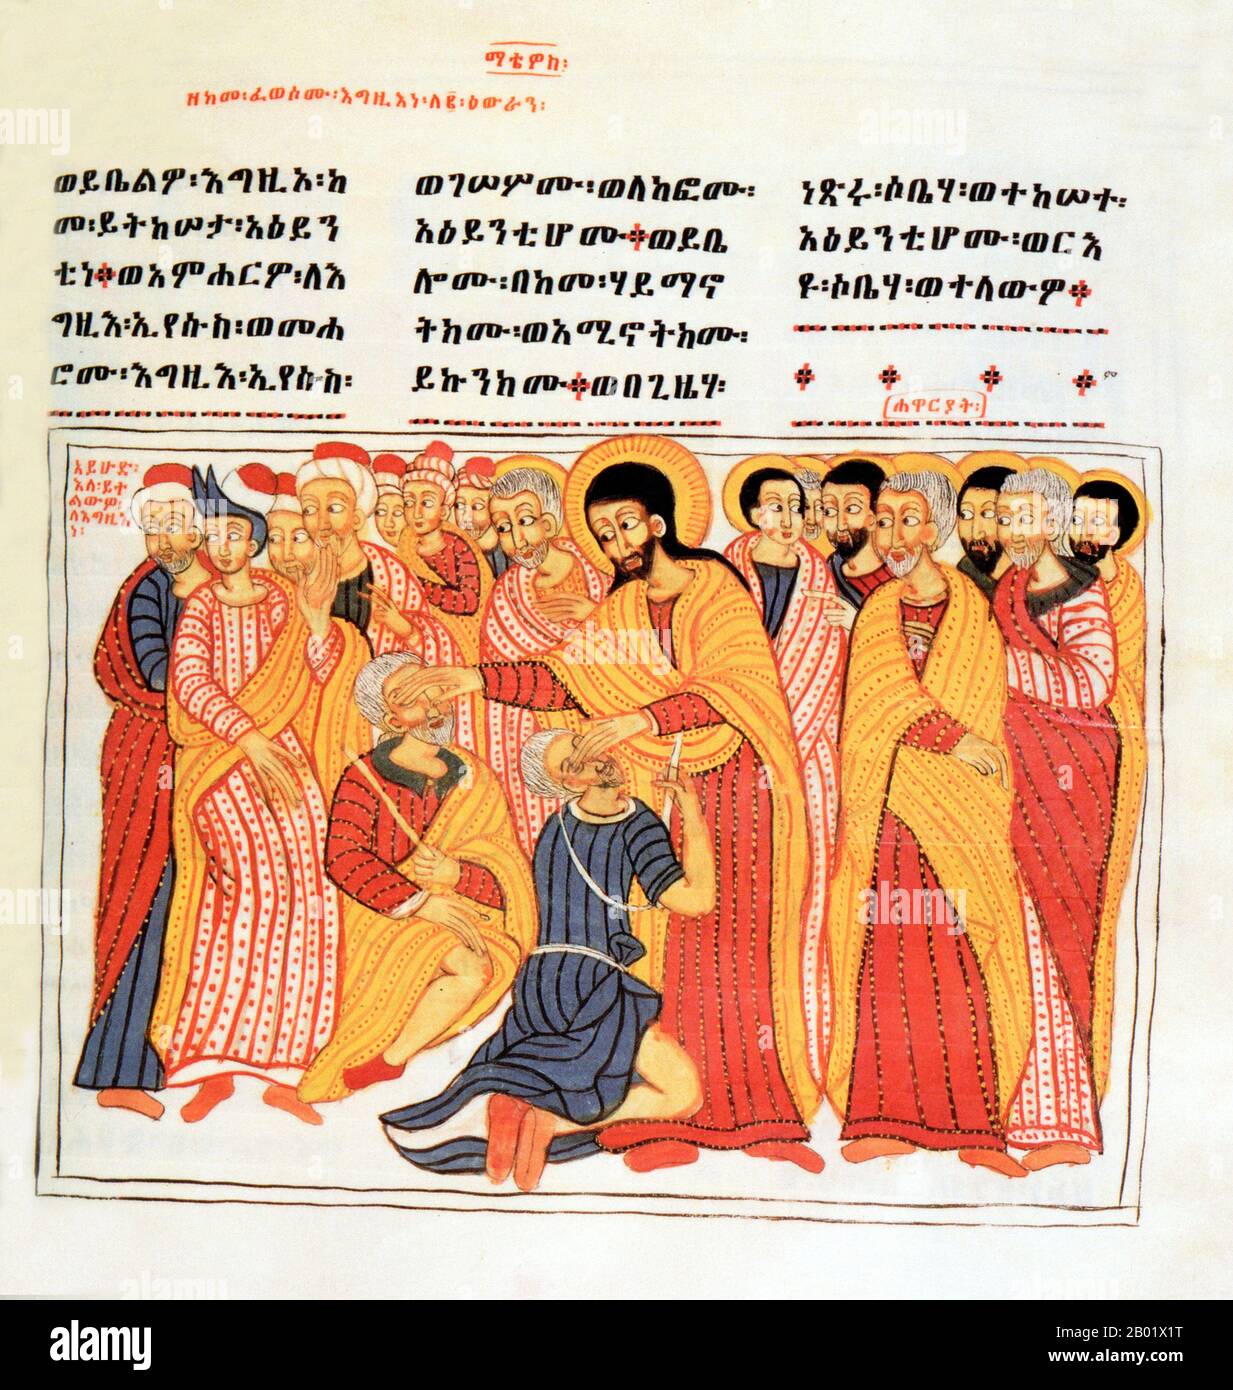 Ethiopie : peinture sur parchemin tirée des quatre Evangiles, Gondar, 1664-1665. Le christianisme en Éthiopie date du Ier siècle de notre ère, et cette longue tradition rend l'Éthiopie unique parmi les pays d'Afrique subsaharienne. Le christianisme dans ce pays est divisé en plusieurs groupes. La plus grande et la plus ancienne est l'Église orthodoxe éthiopienne Tewahedo qui est une église orthodoxe orientale en Éthiopie qui faisait partie de l'Église copte orthodoxe jusqu'en 1959, date à laquelle elle a reçu son propre patriarche par le pape copte orthodoxe d'Alexandrie et le patriarche de toute l'Afrique Cyril VI. Banque D'Images